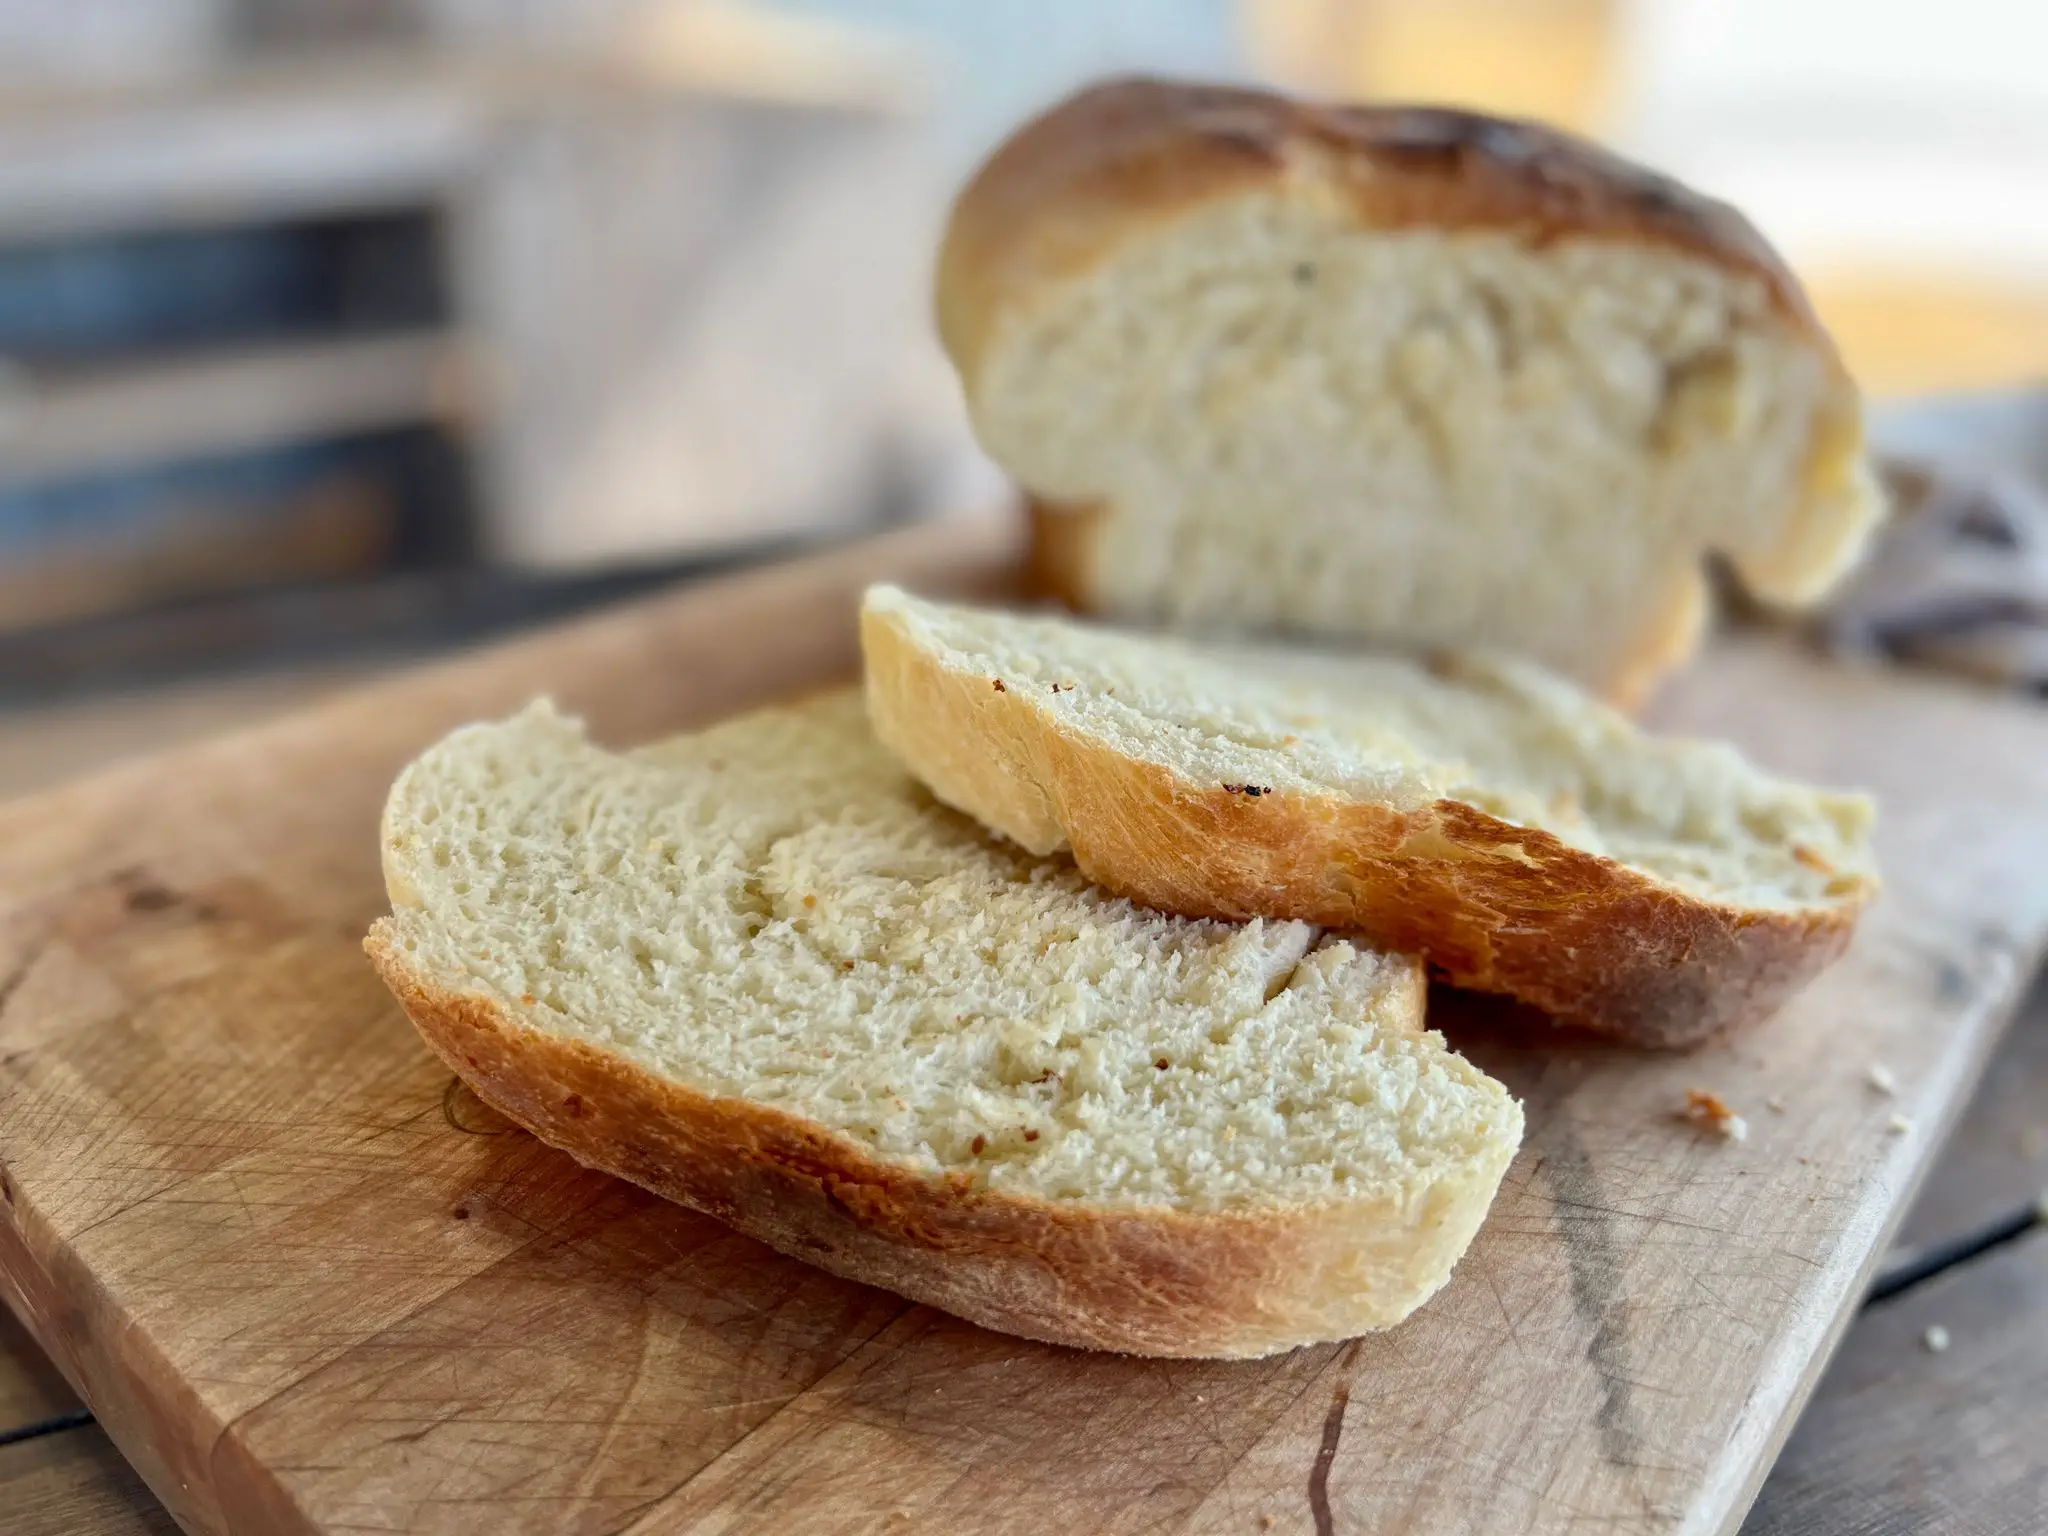 https://kentrollins.com/wp-content/uploads/2022/08/Homemade-Bread-Featured.jpeg